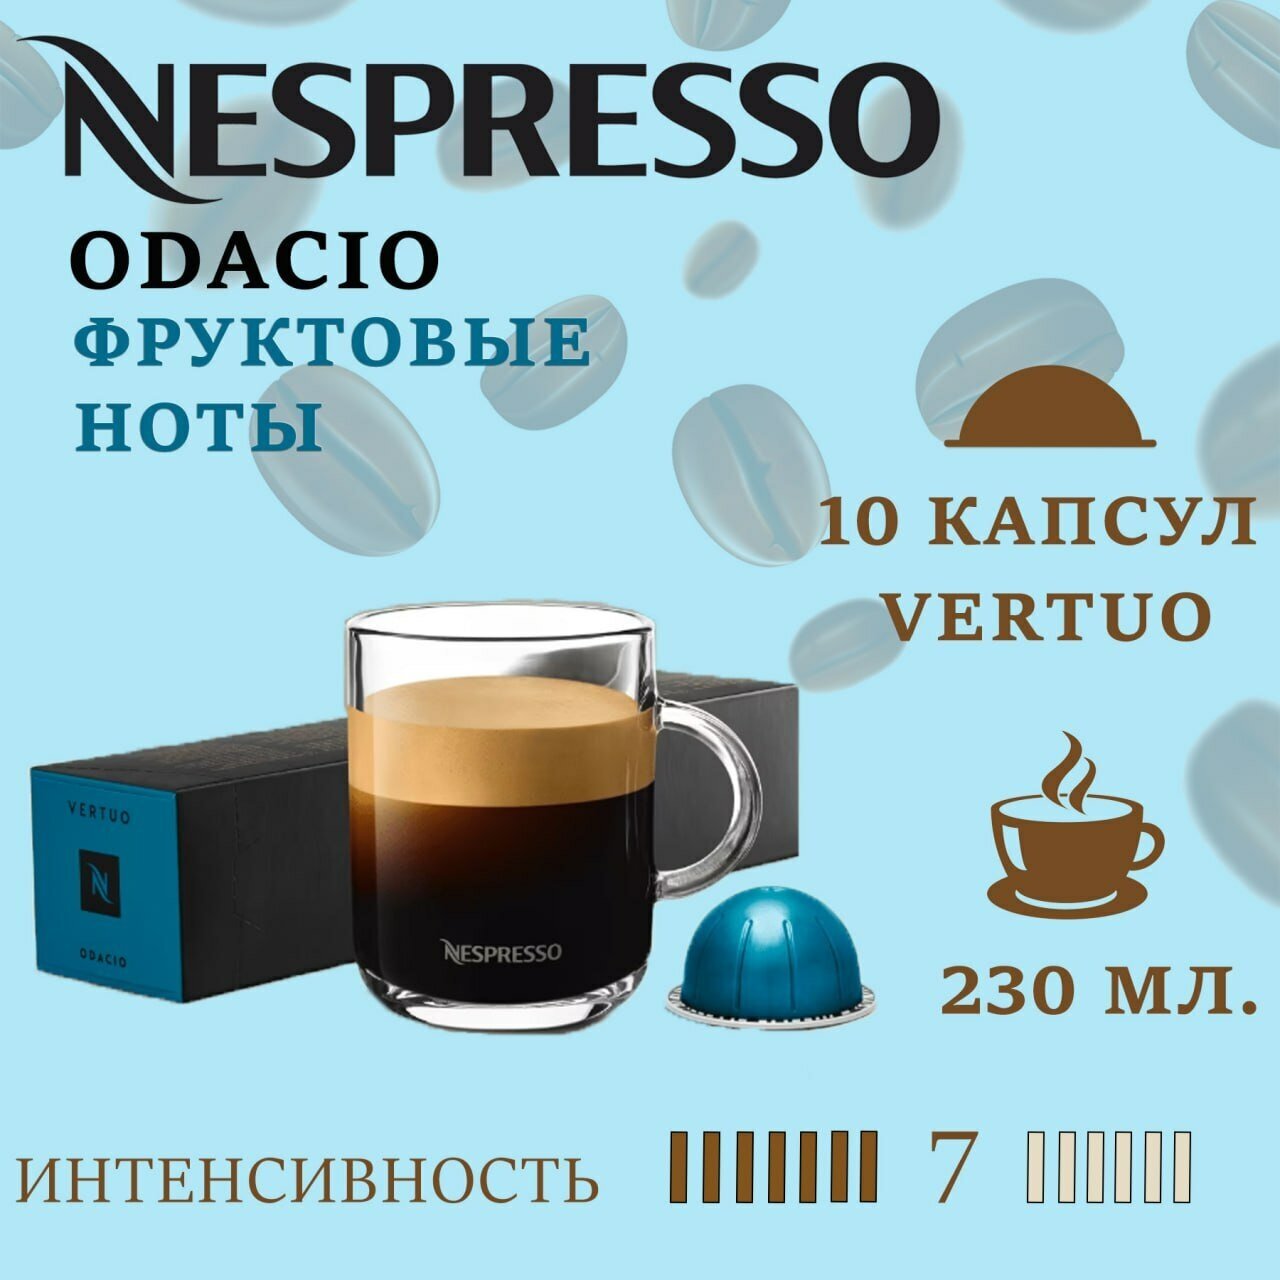 Капсулы для кофемашин Nespresso Vertuo "Odacio" (10 капсул)